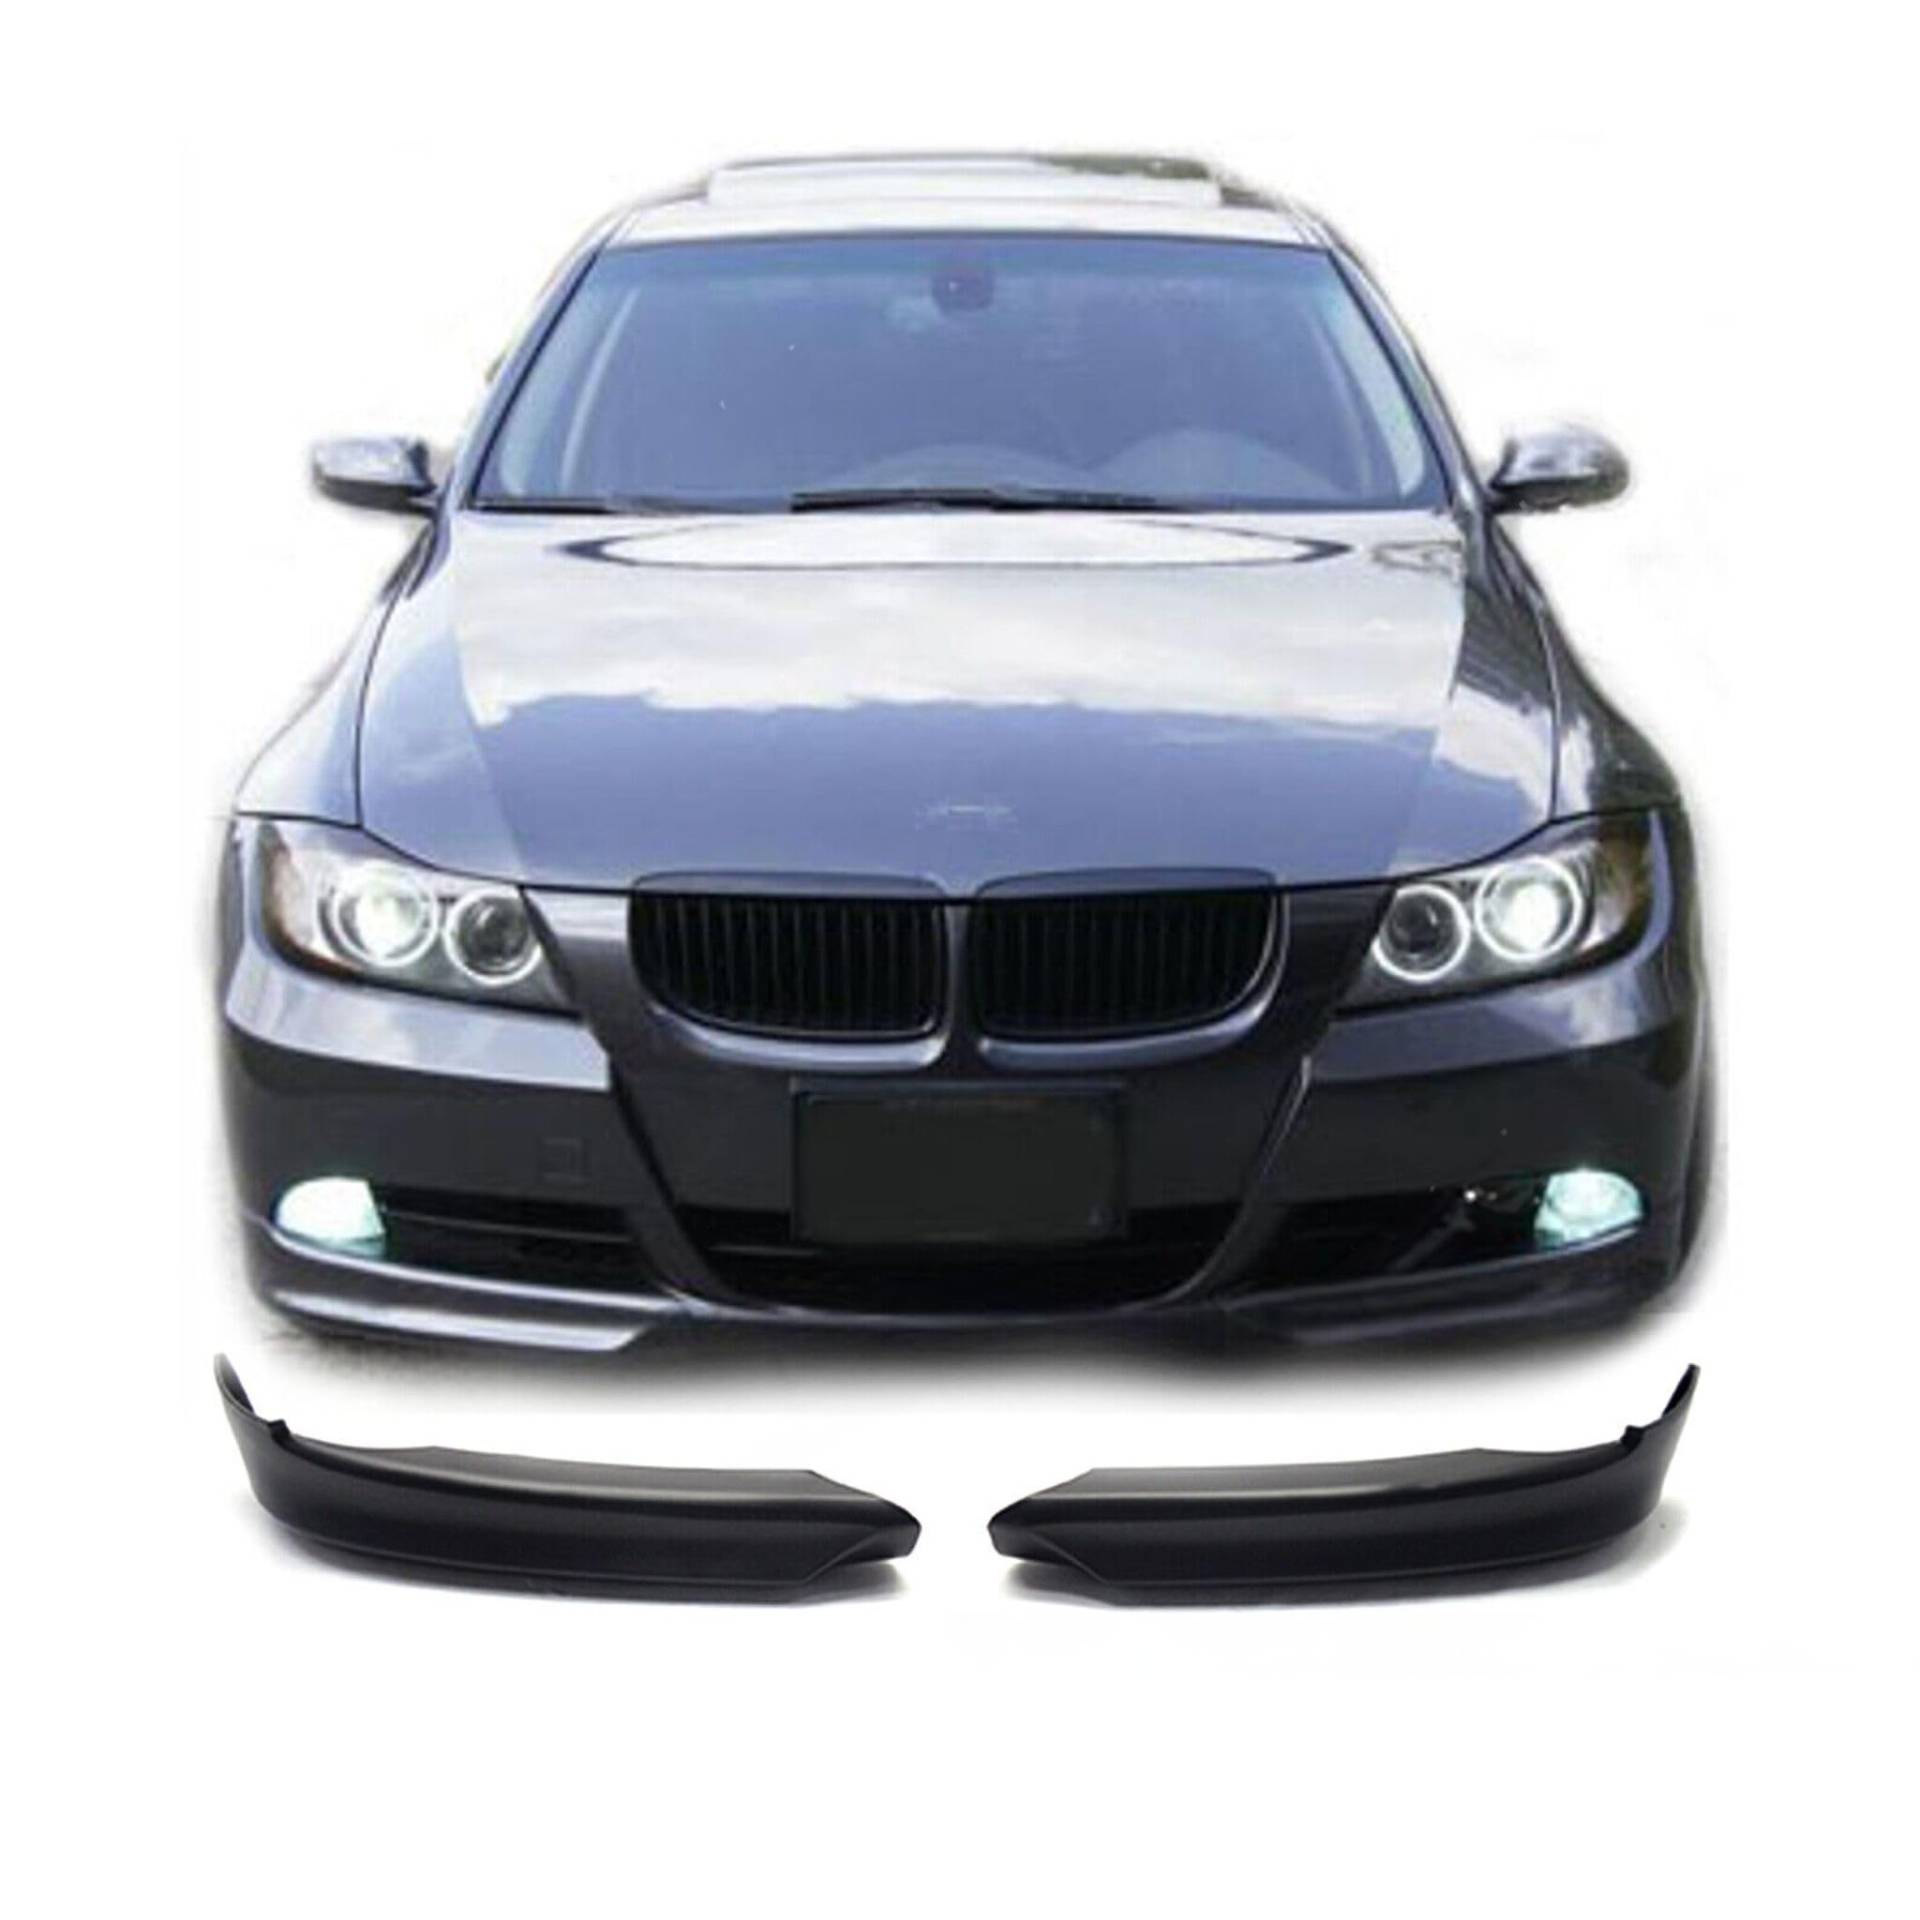 FLY DESIGN 70197 Frontspoiler passend für BMW E90 (3er) Limousine Touring 2005-2008 vor LCI, Frontflügel, Flaps für Auto-Tuning, ABS Kunststoff, Unlackiert von FLY DESIGN